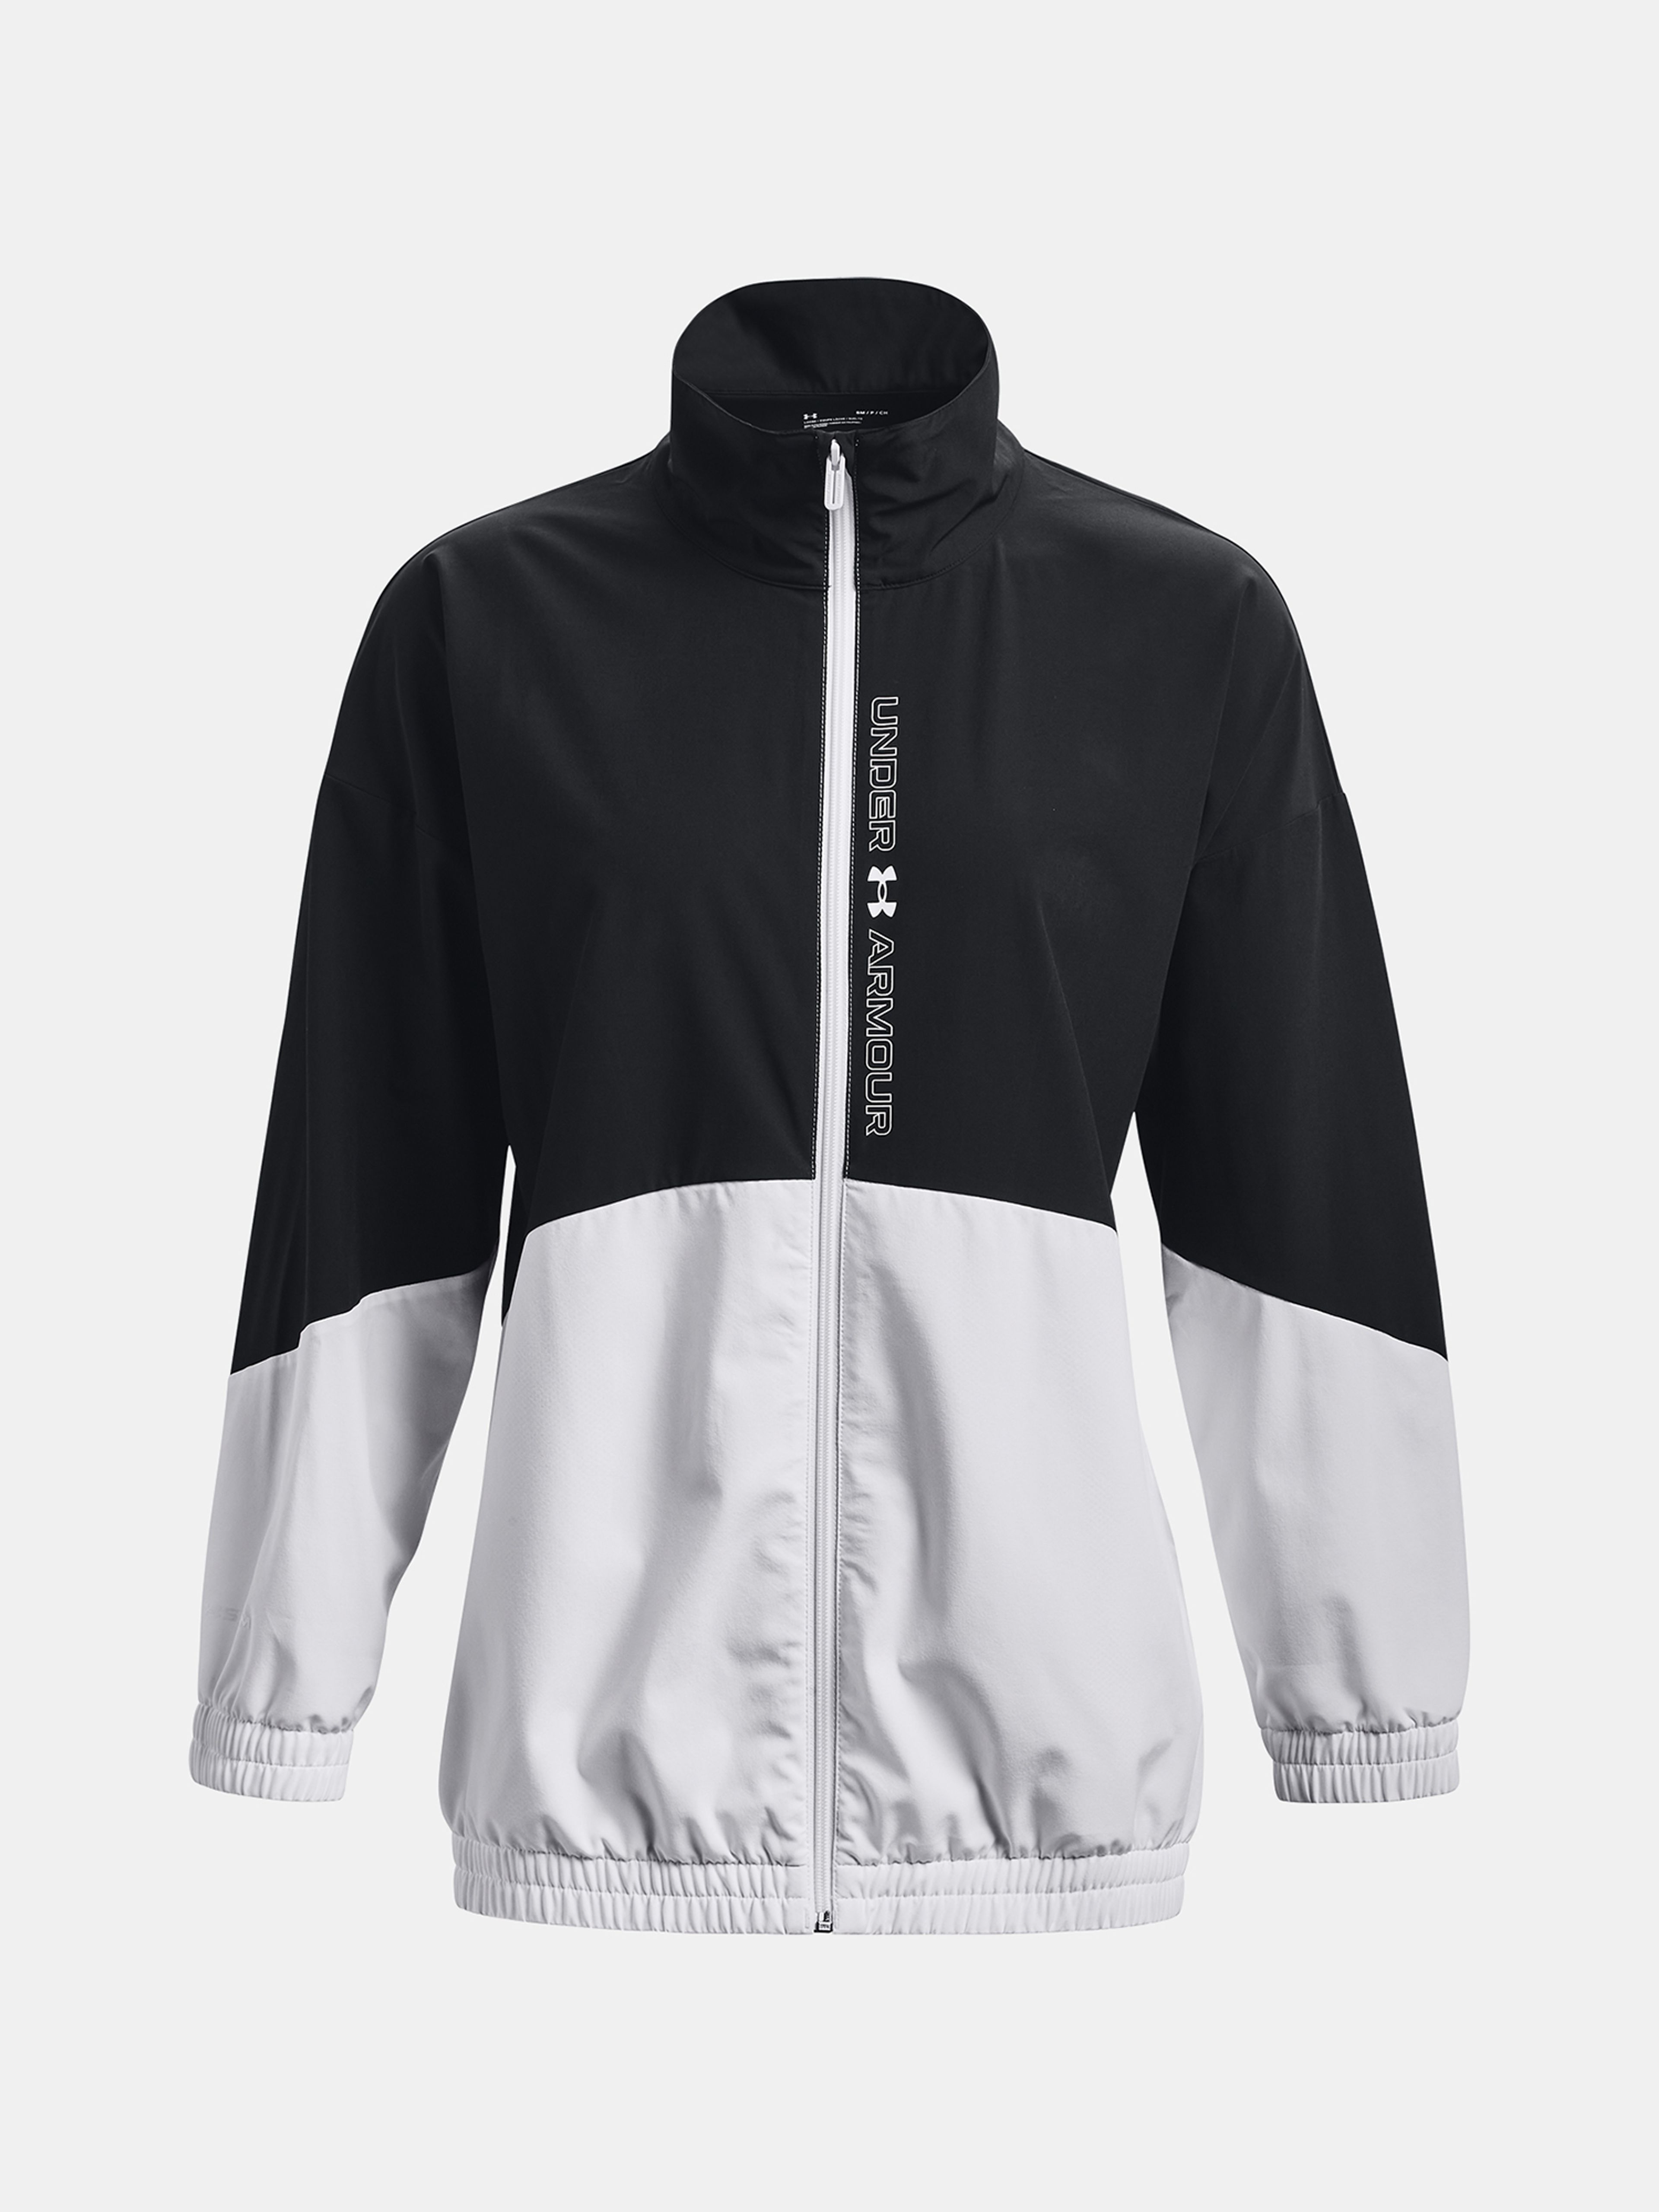  Woven FZ Jacket, white - women's jacket - UNDER ARMOUR -  49.70 € - outdoorové oblečení a vybavení shop